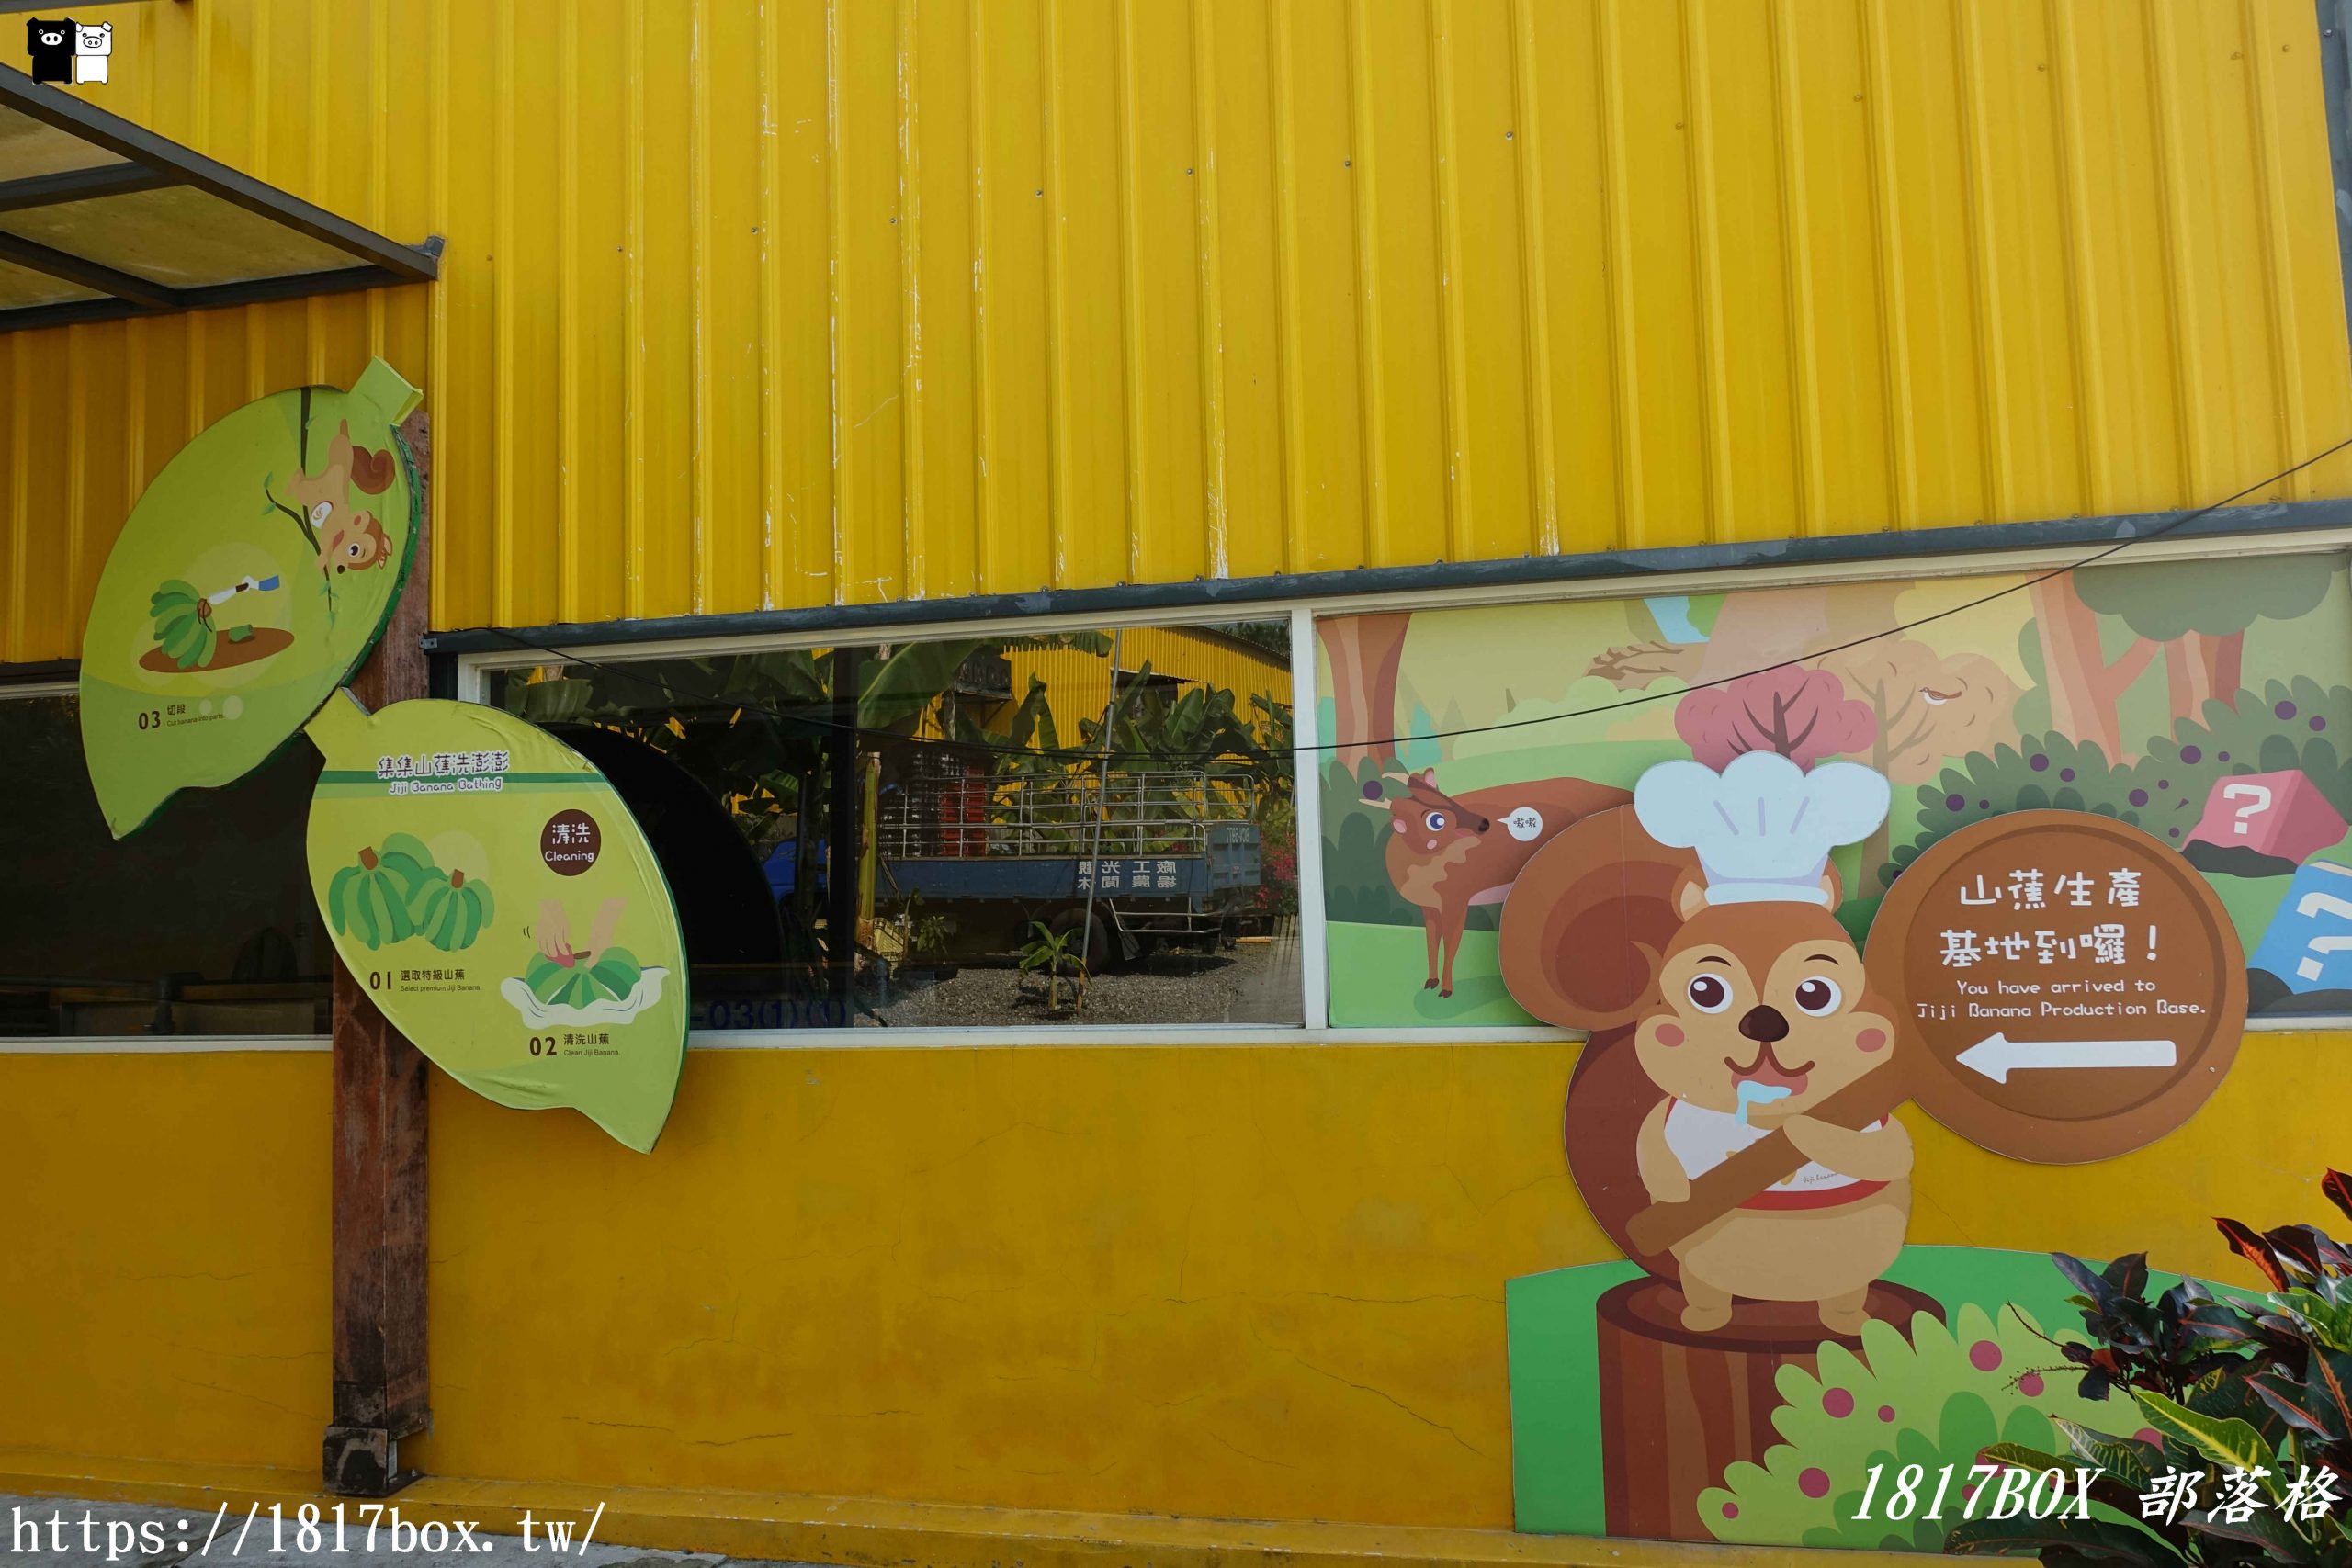 【南投。集集】jijibanana集元果觀光工廠。以集集山蕉為主題。免費親子景點 @1817BOX部落格